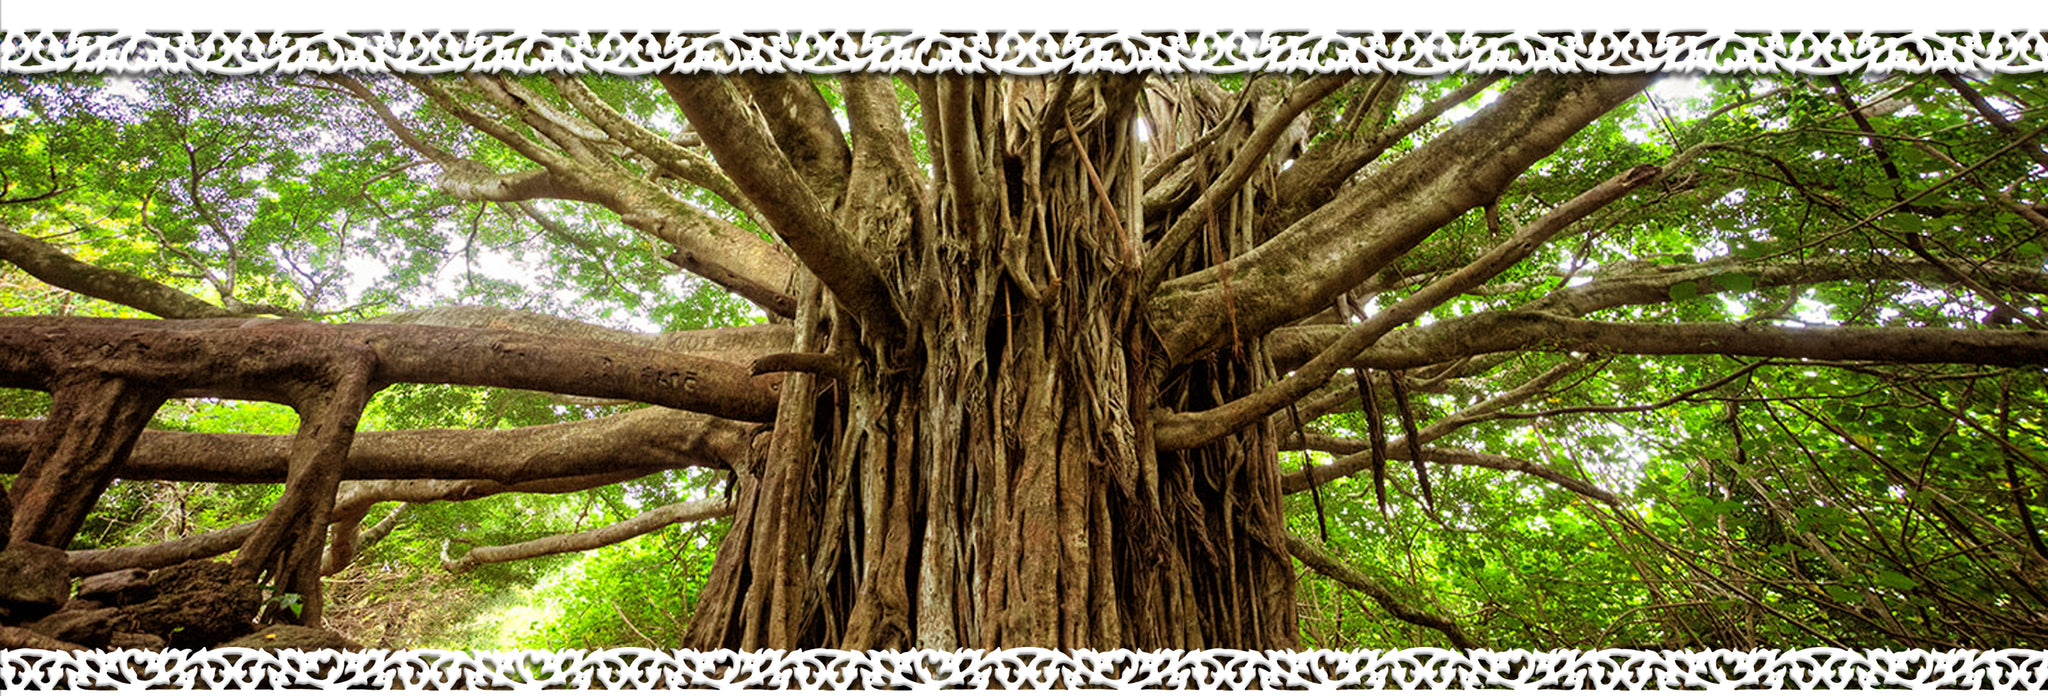 iBodhi Bodhi Tree About Us Image